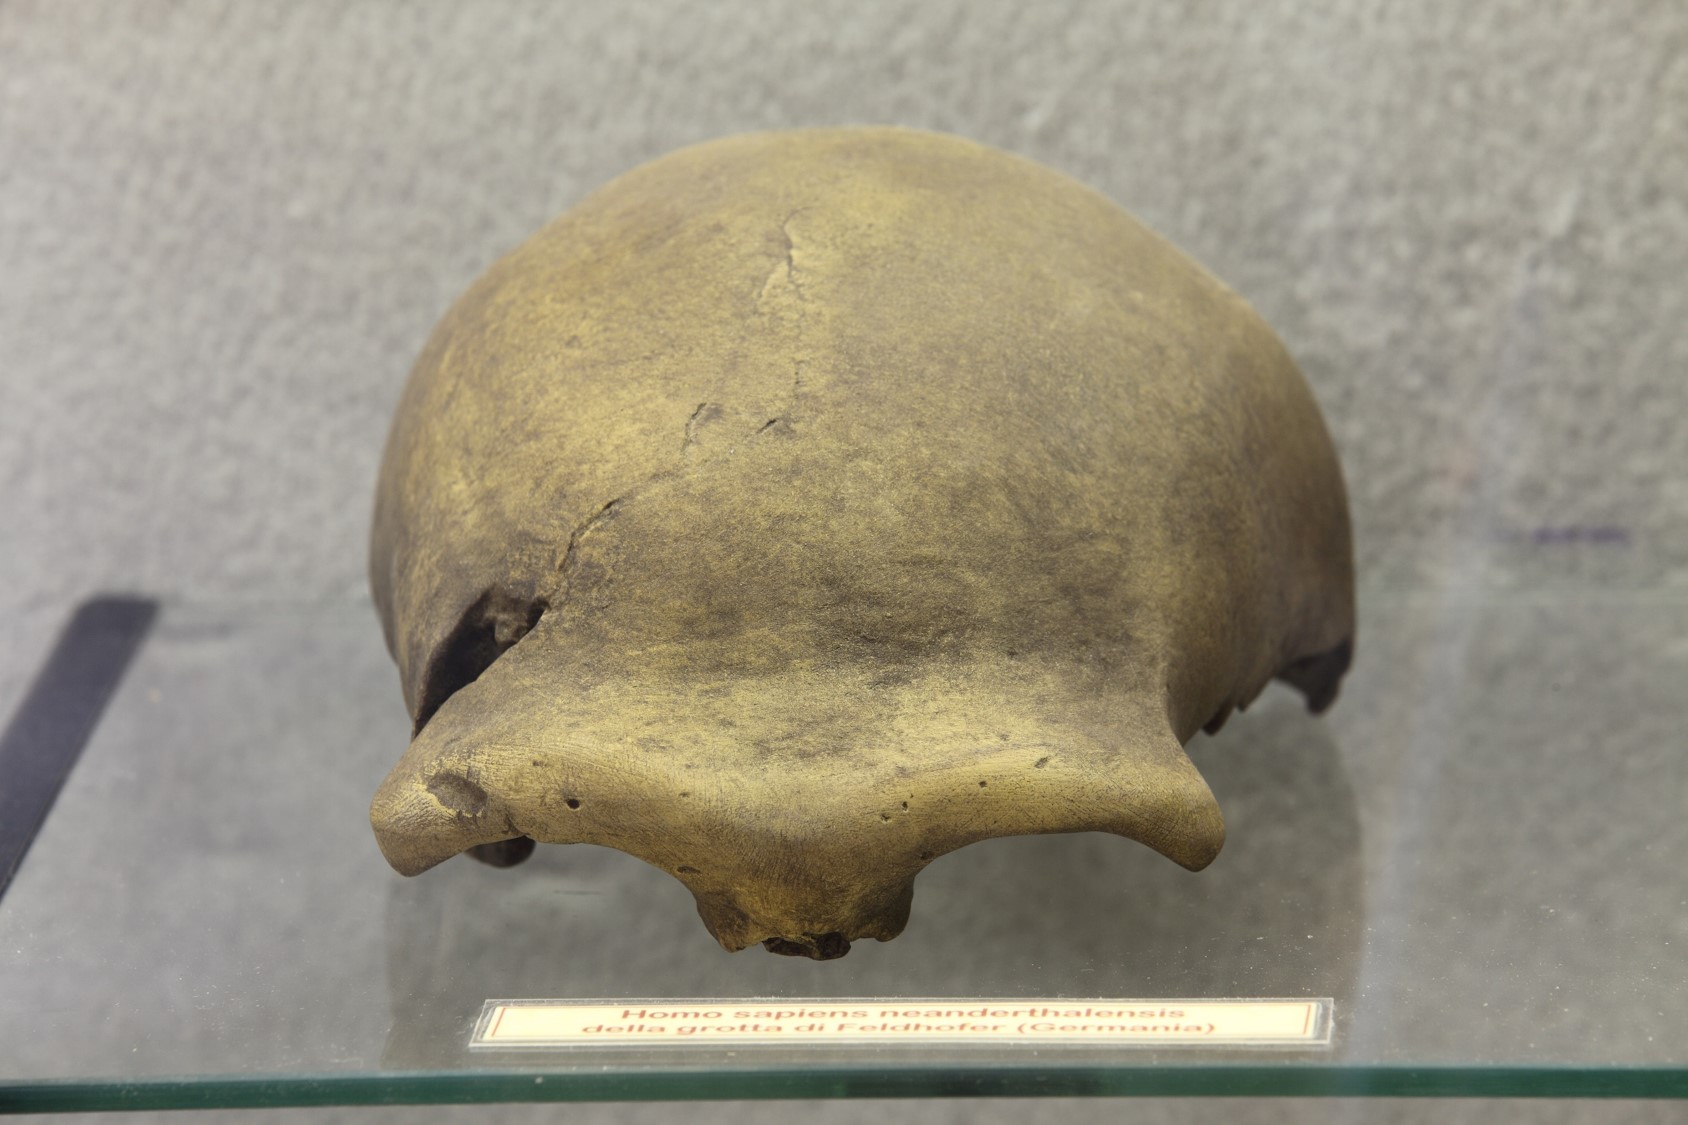 Riproduzione di calotta cranica di Homo di Neandertal ritrovata in una grotta di Feldhofer (Germania).